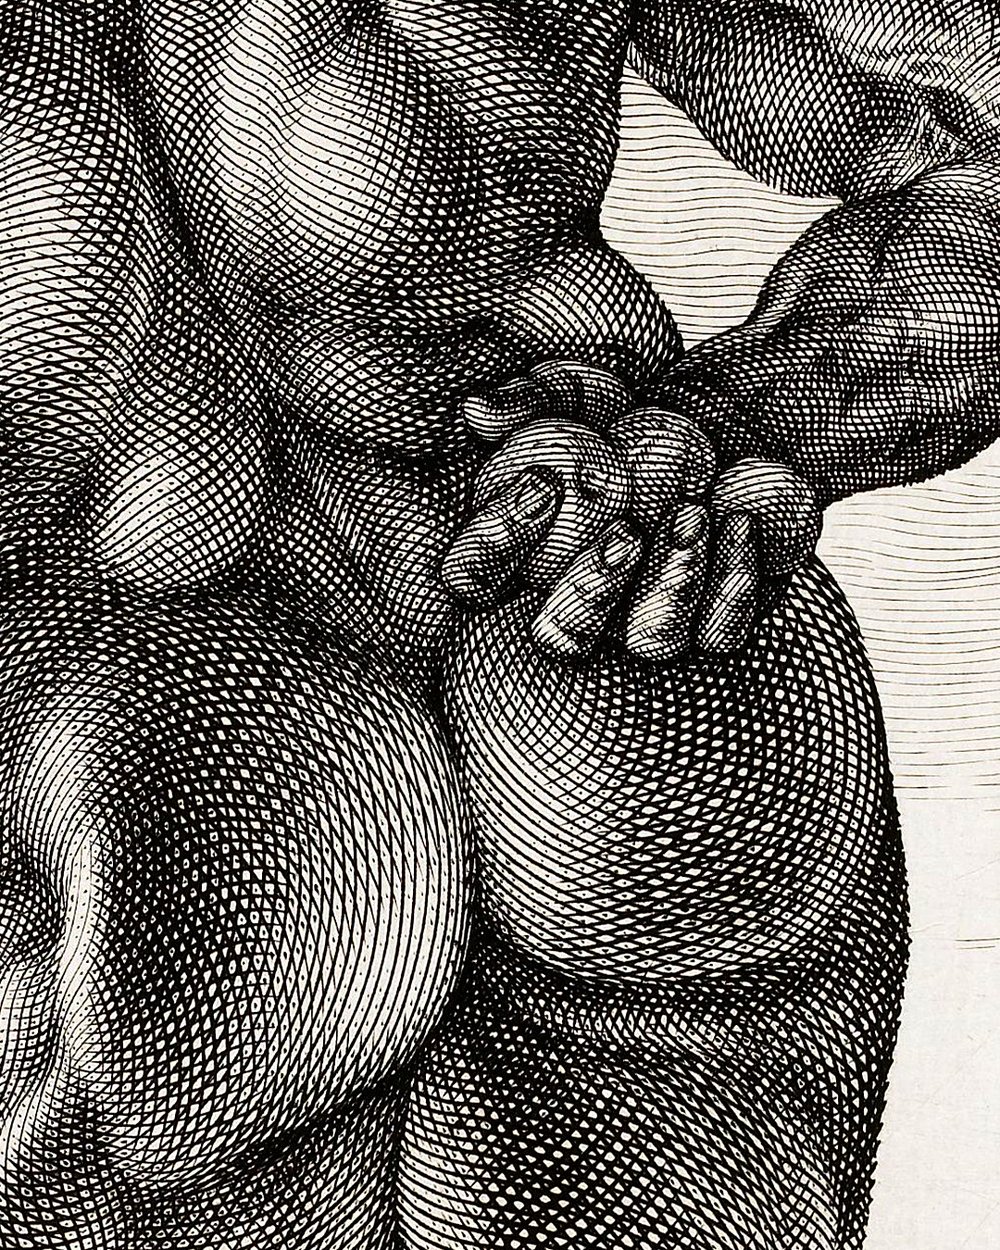 "Hercules Farnese" (1617)